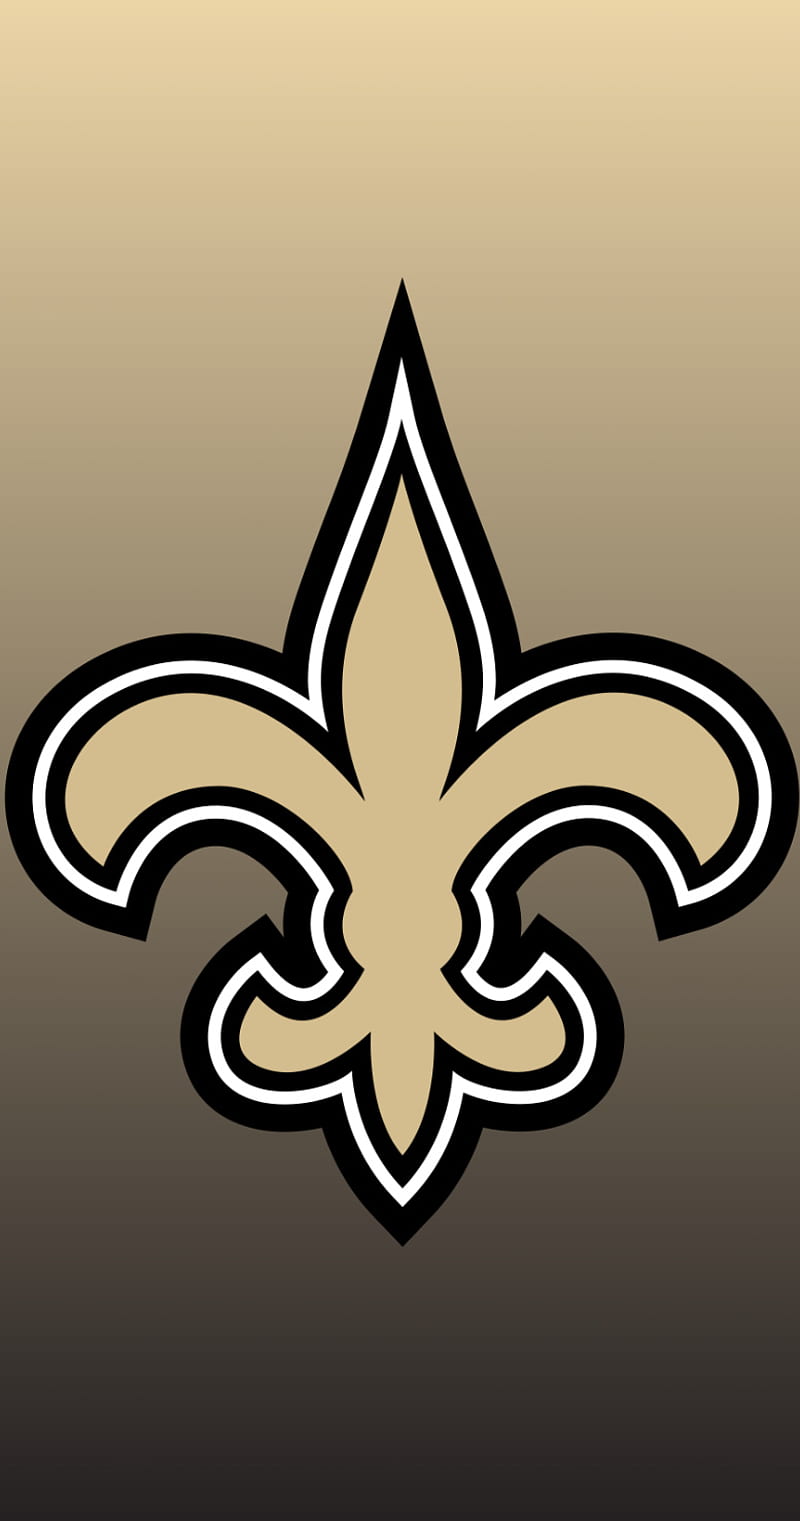 HD New Orleans Saints NFL Backgrounds  2023 NFL Football Wallpapers  New  orleans saints New orleans saints logo New orleans saints football